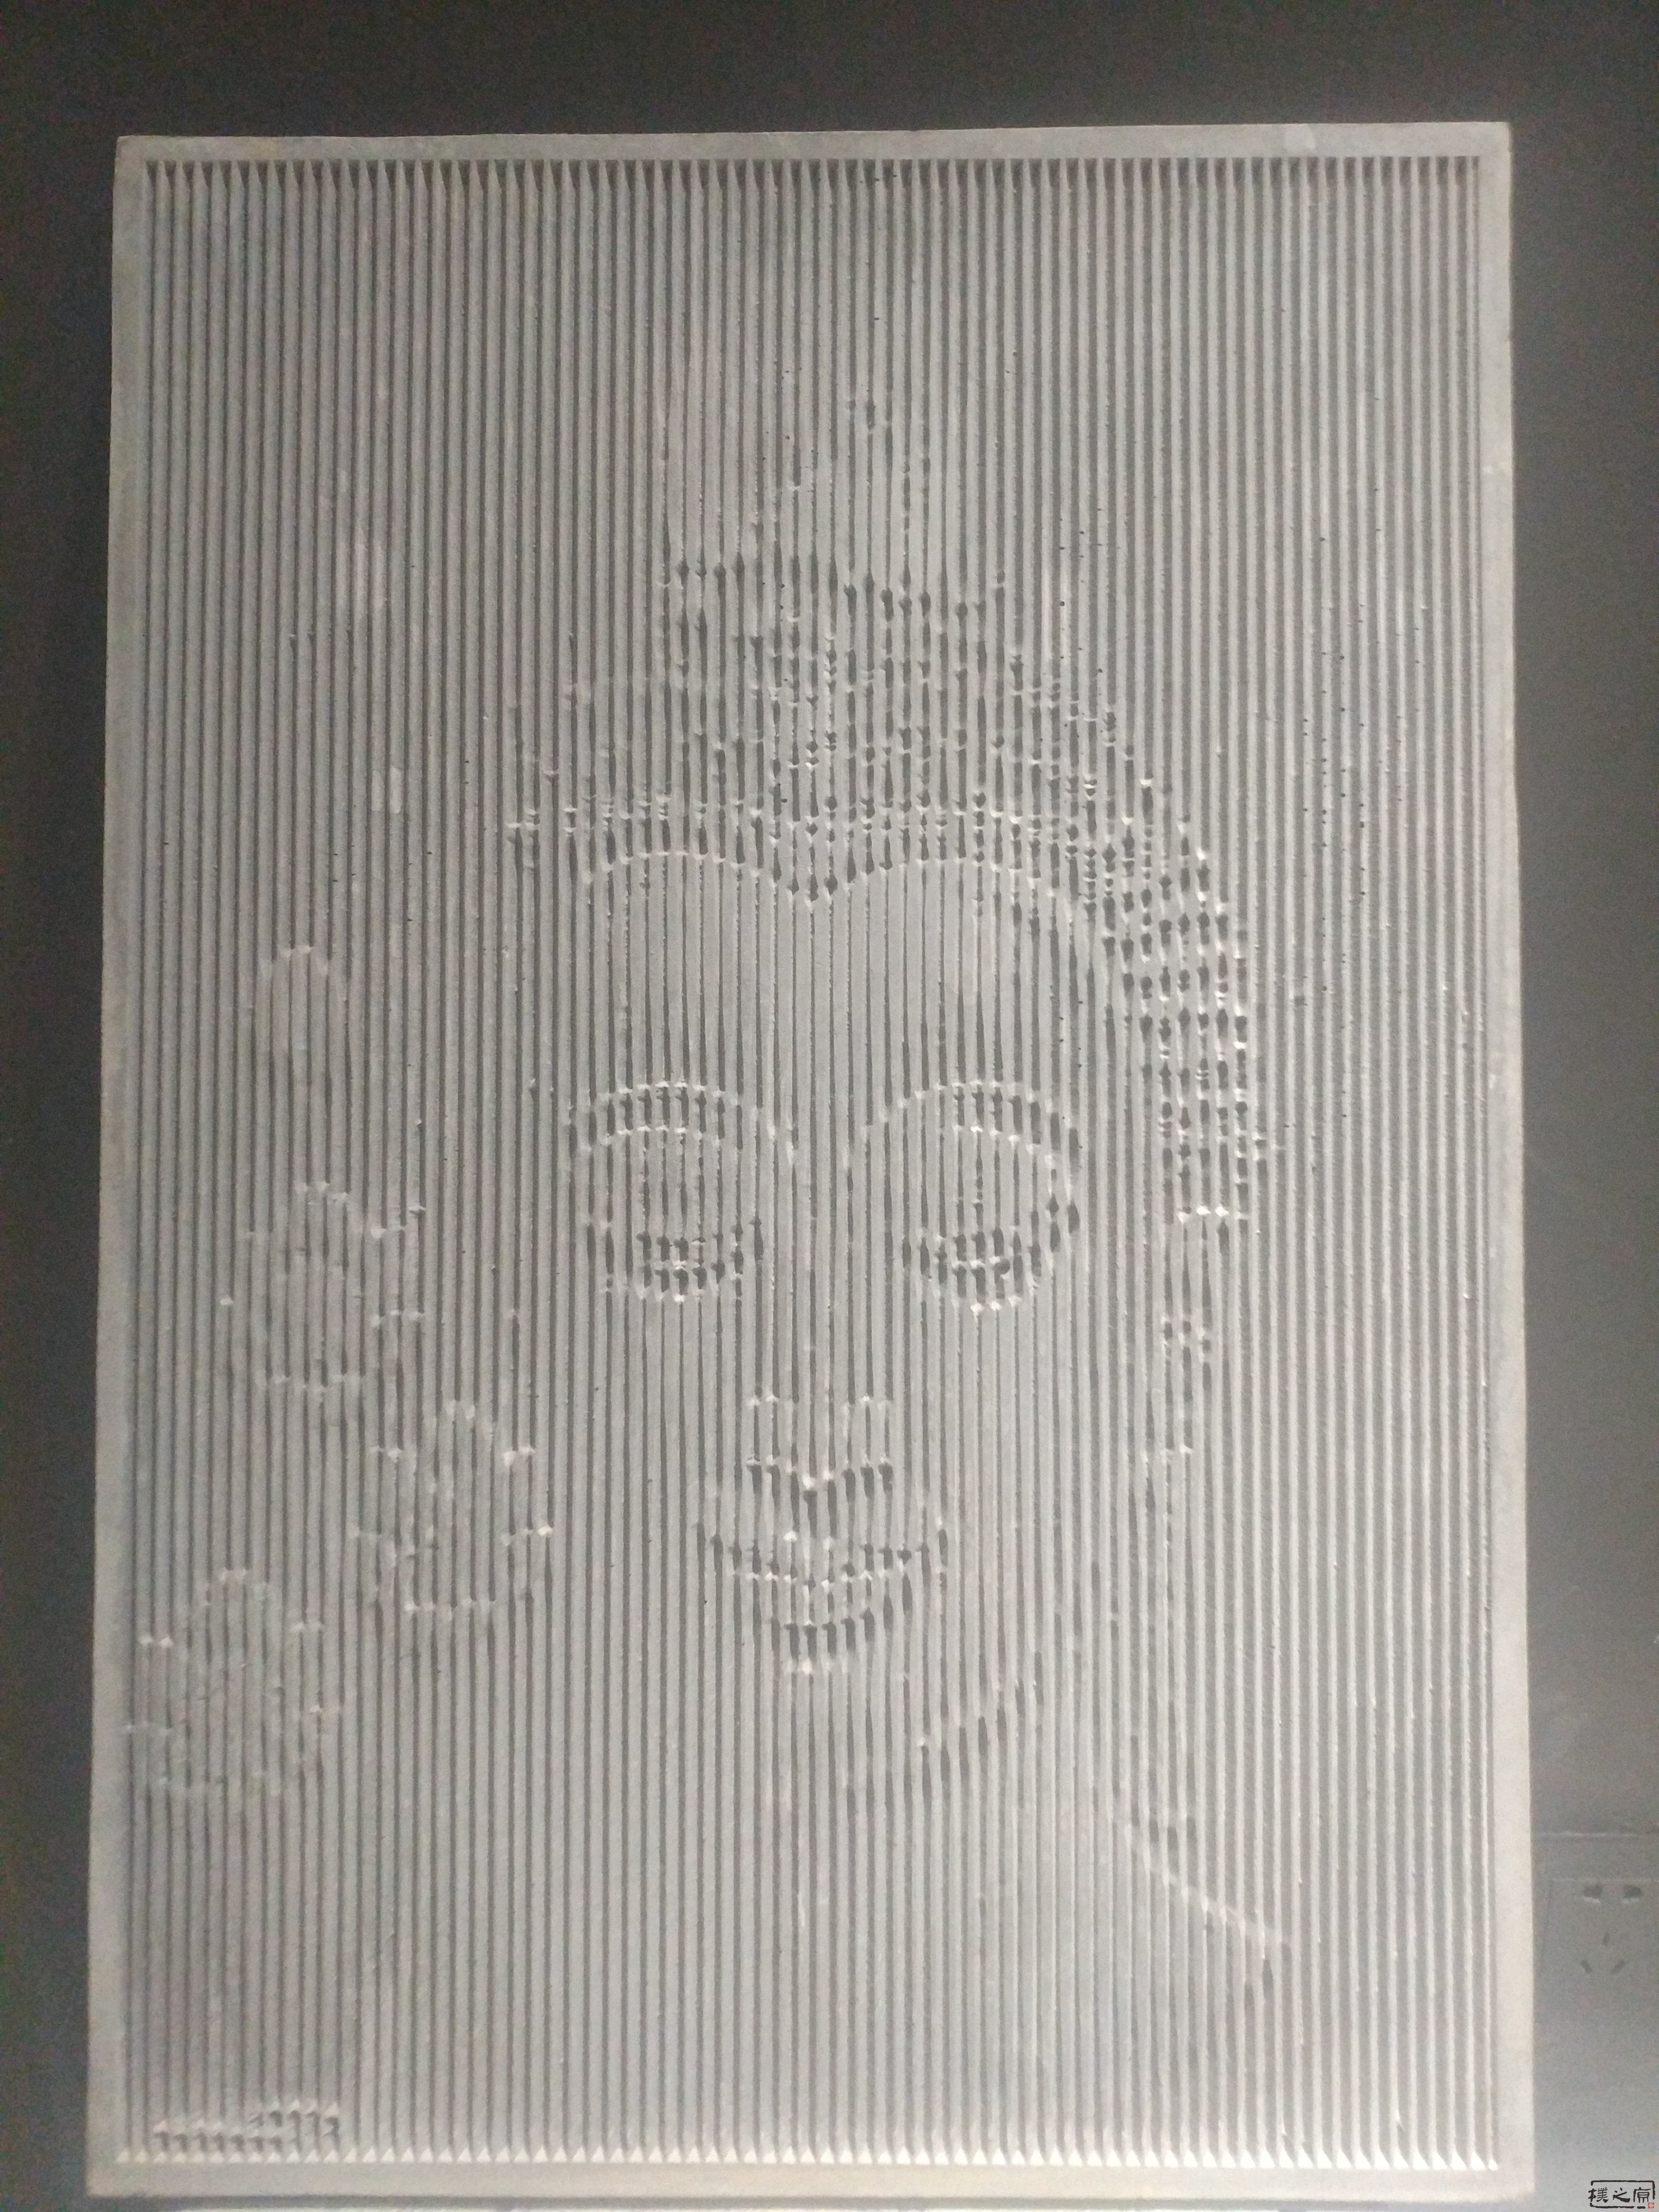 菩萨肖像的清水混凝土工艺品挂板